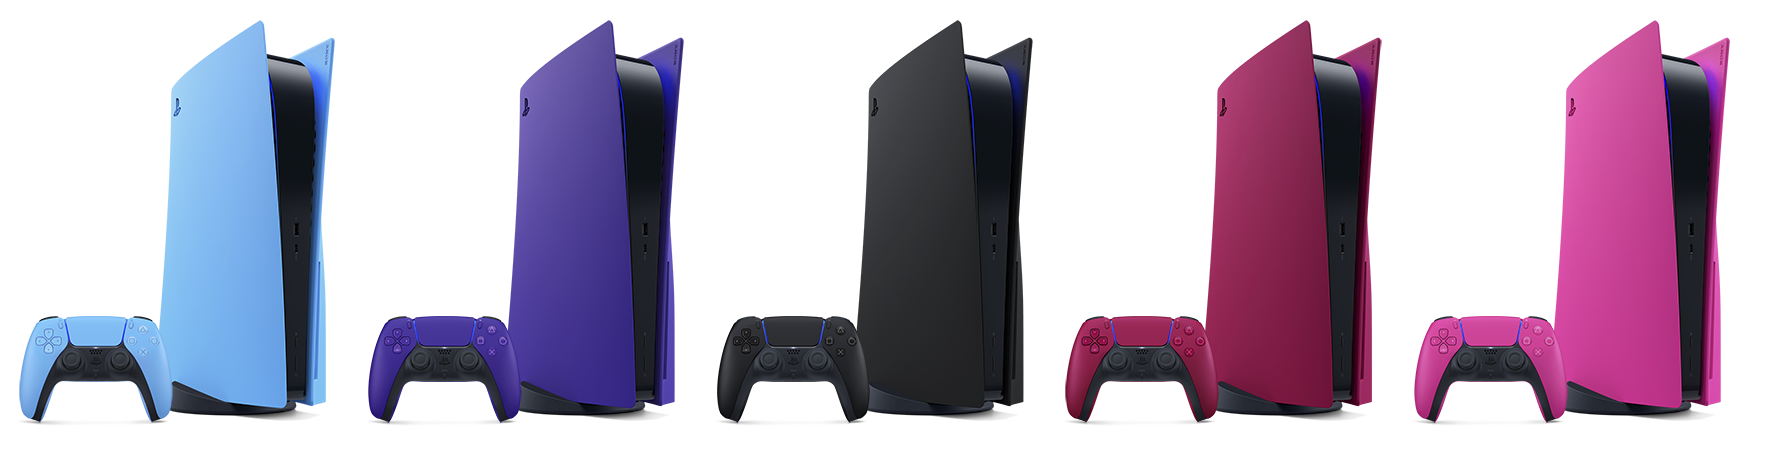 Beş farklı renkte PS5 kapakları